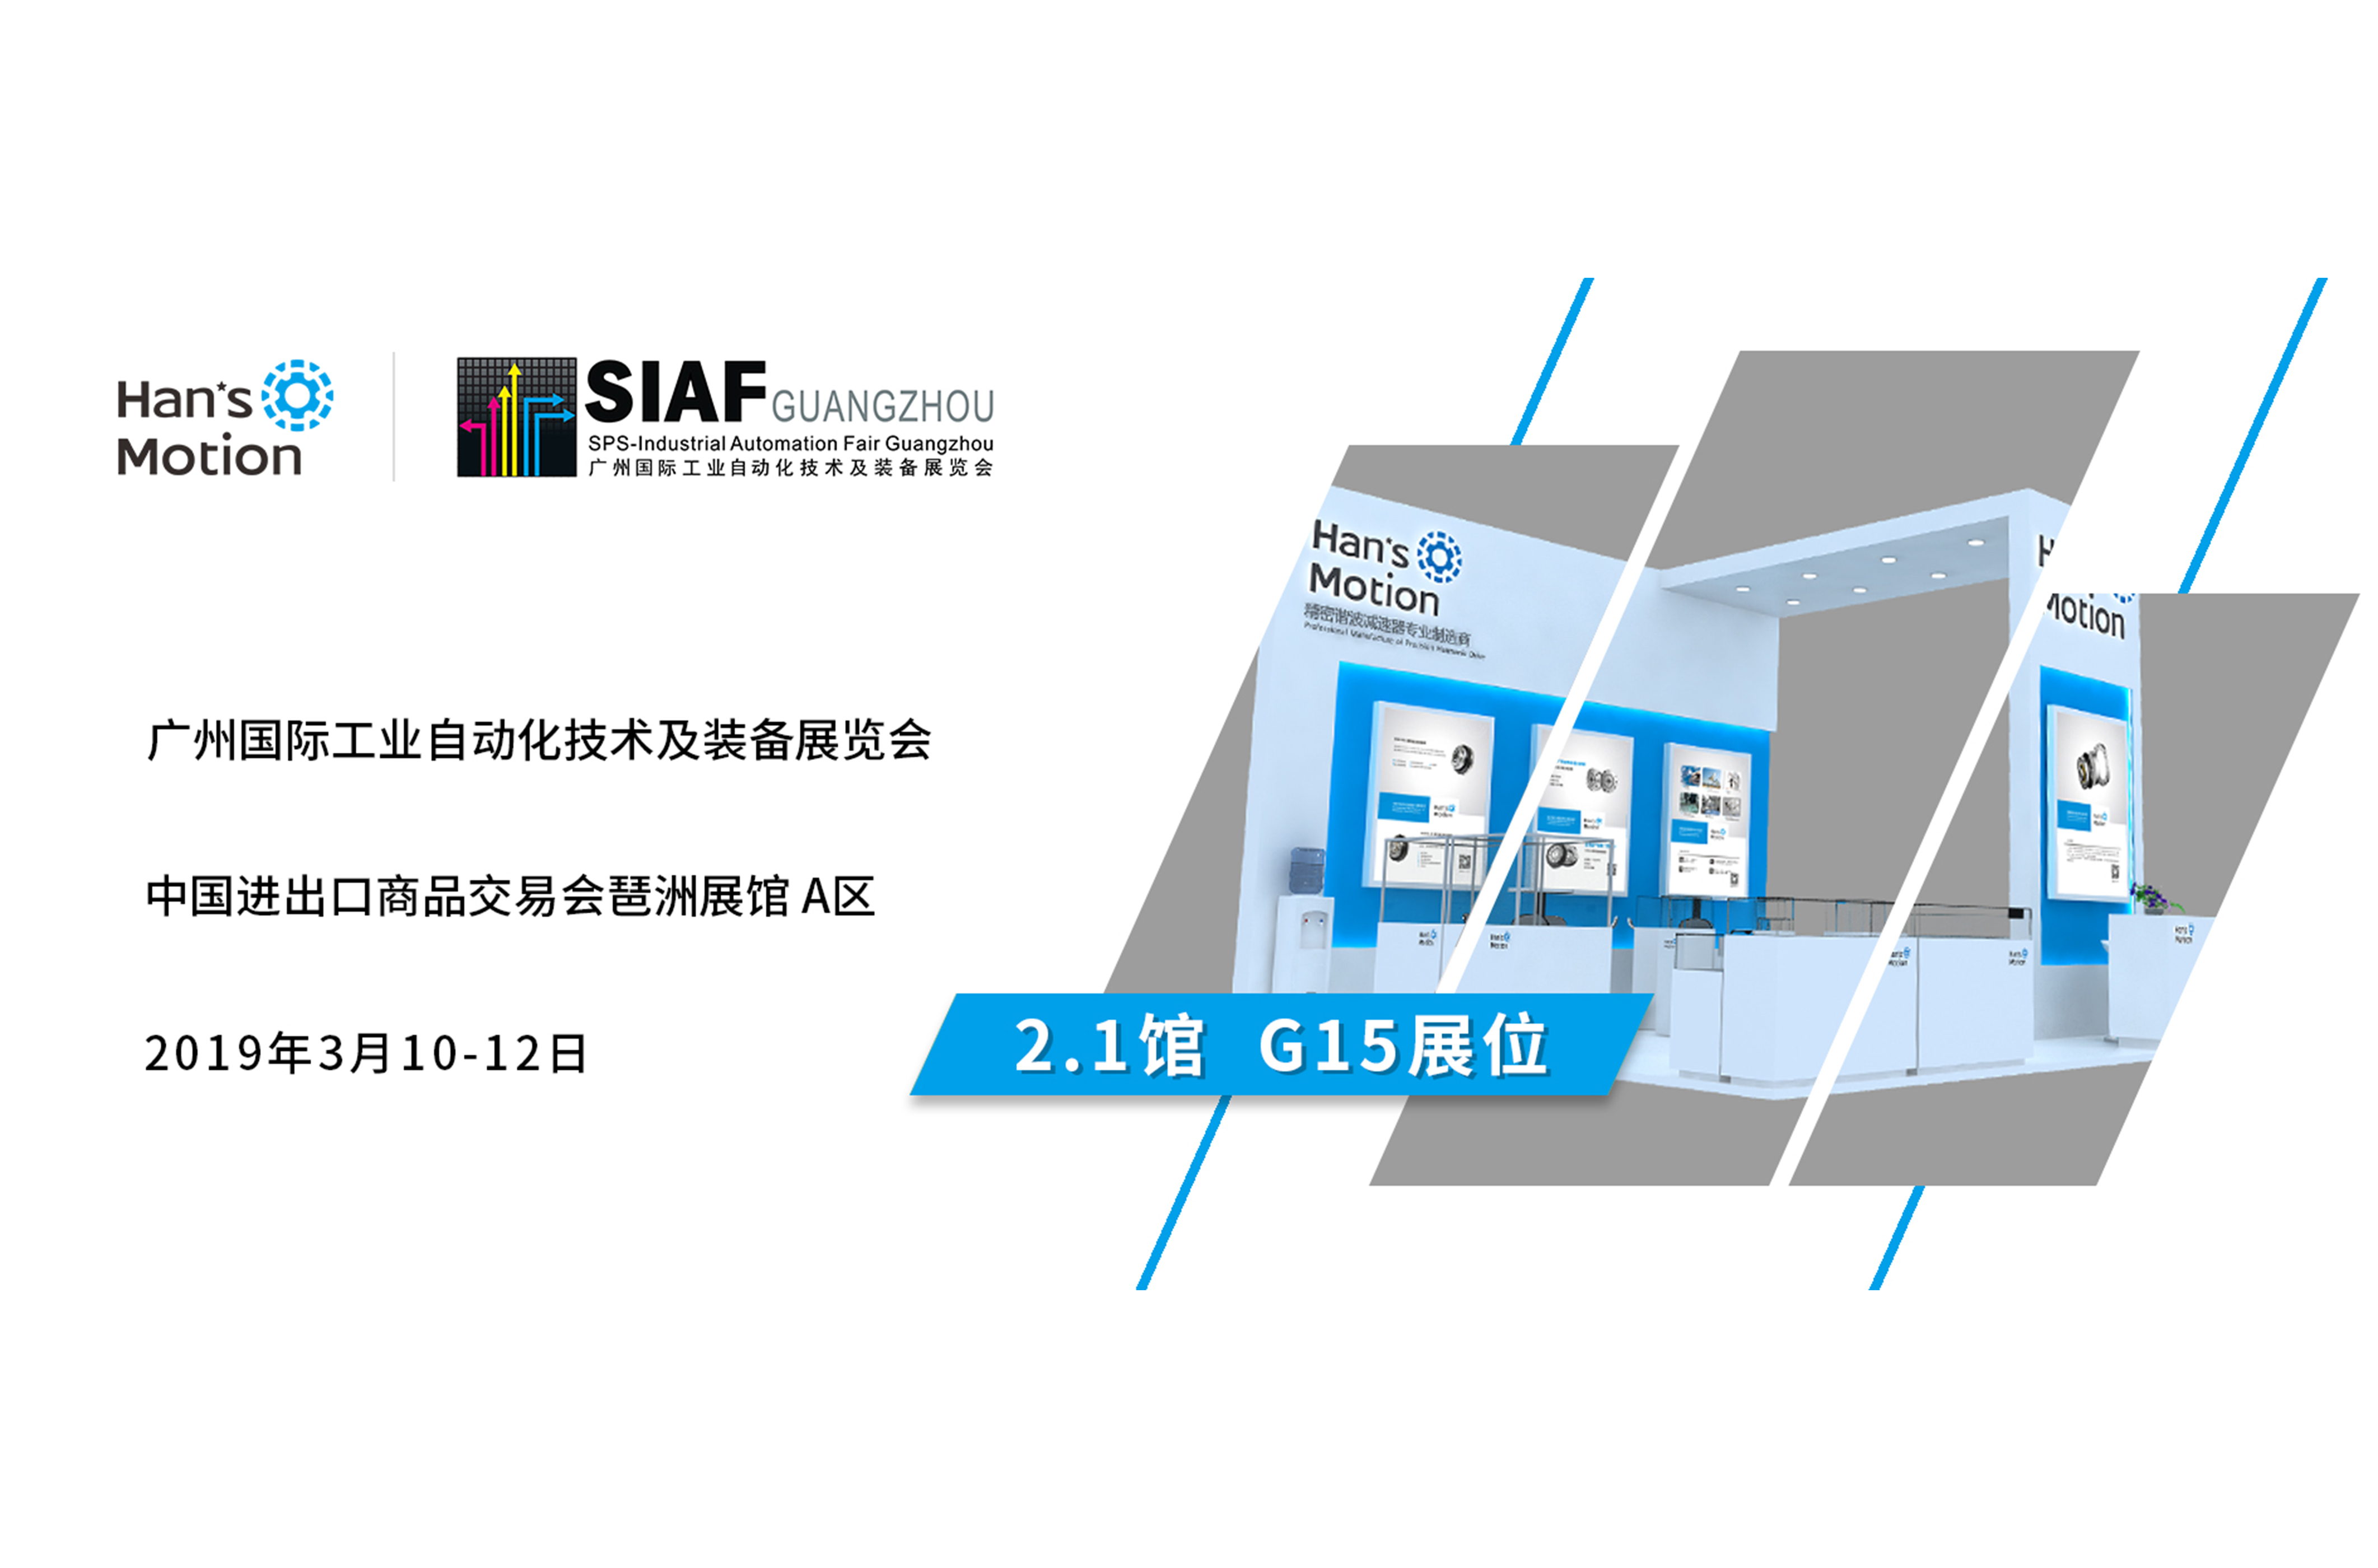 2019 第一站 | 大族谐波传动诚邀您参加SIAF广州国际工业自动化展